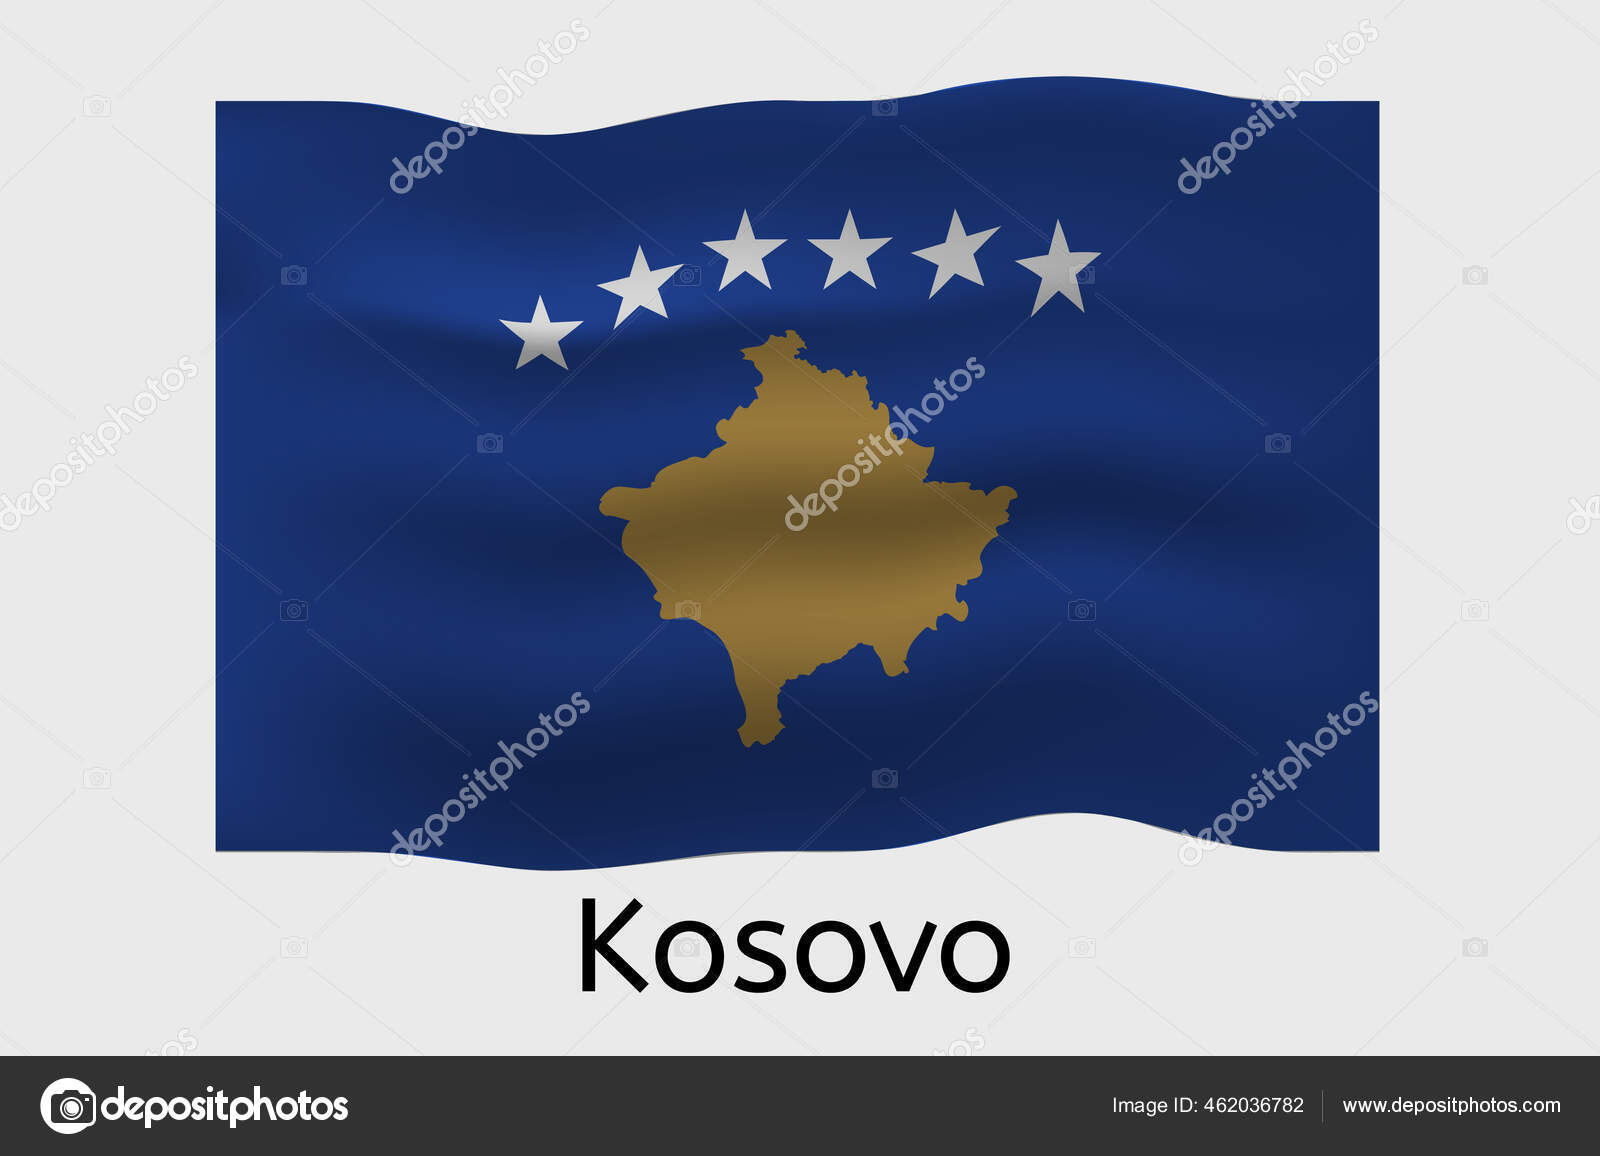 Kosovar chat CHAT KOSOVAR